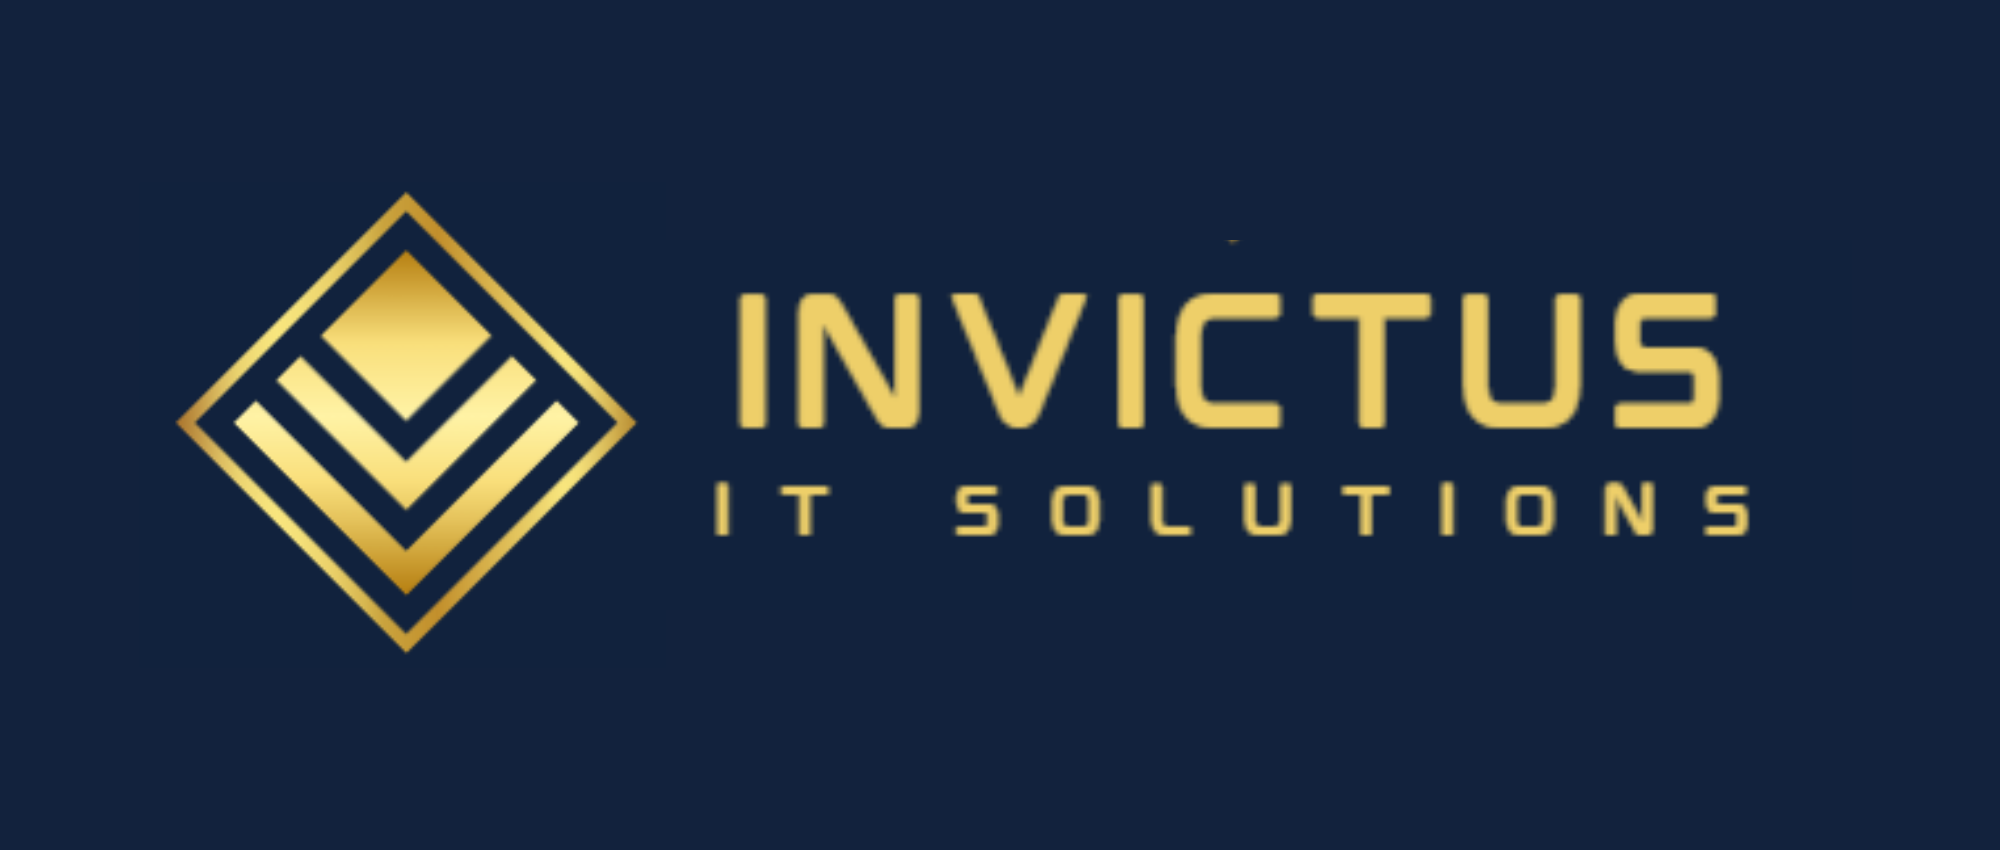 Invictus IT Solutions